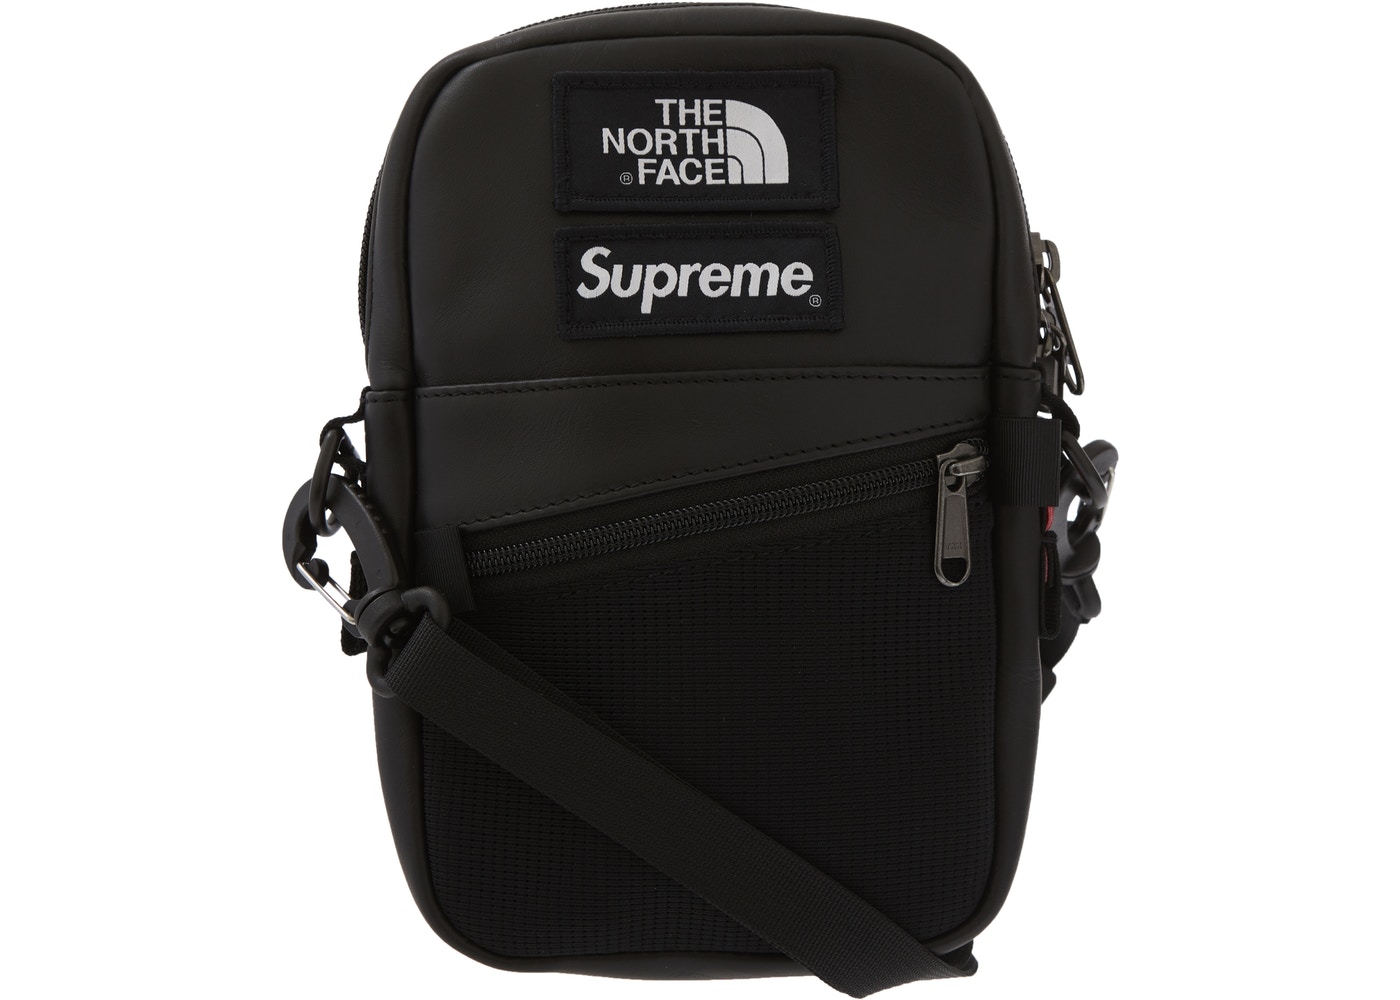 Supreme The North Face Leather Shoulder Bag Black - StockX News